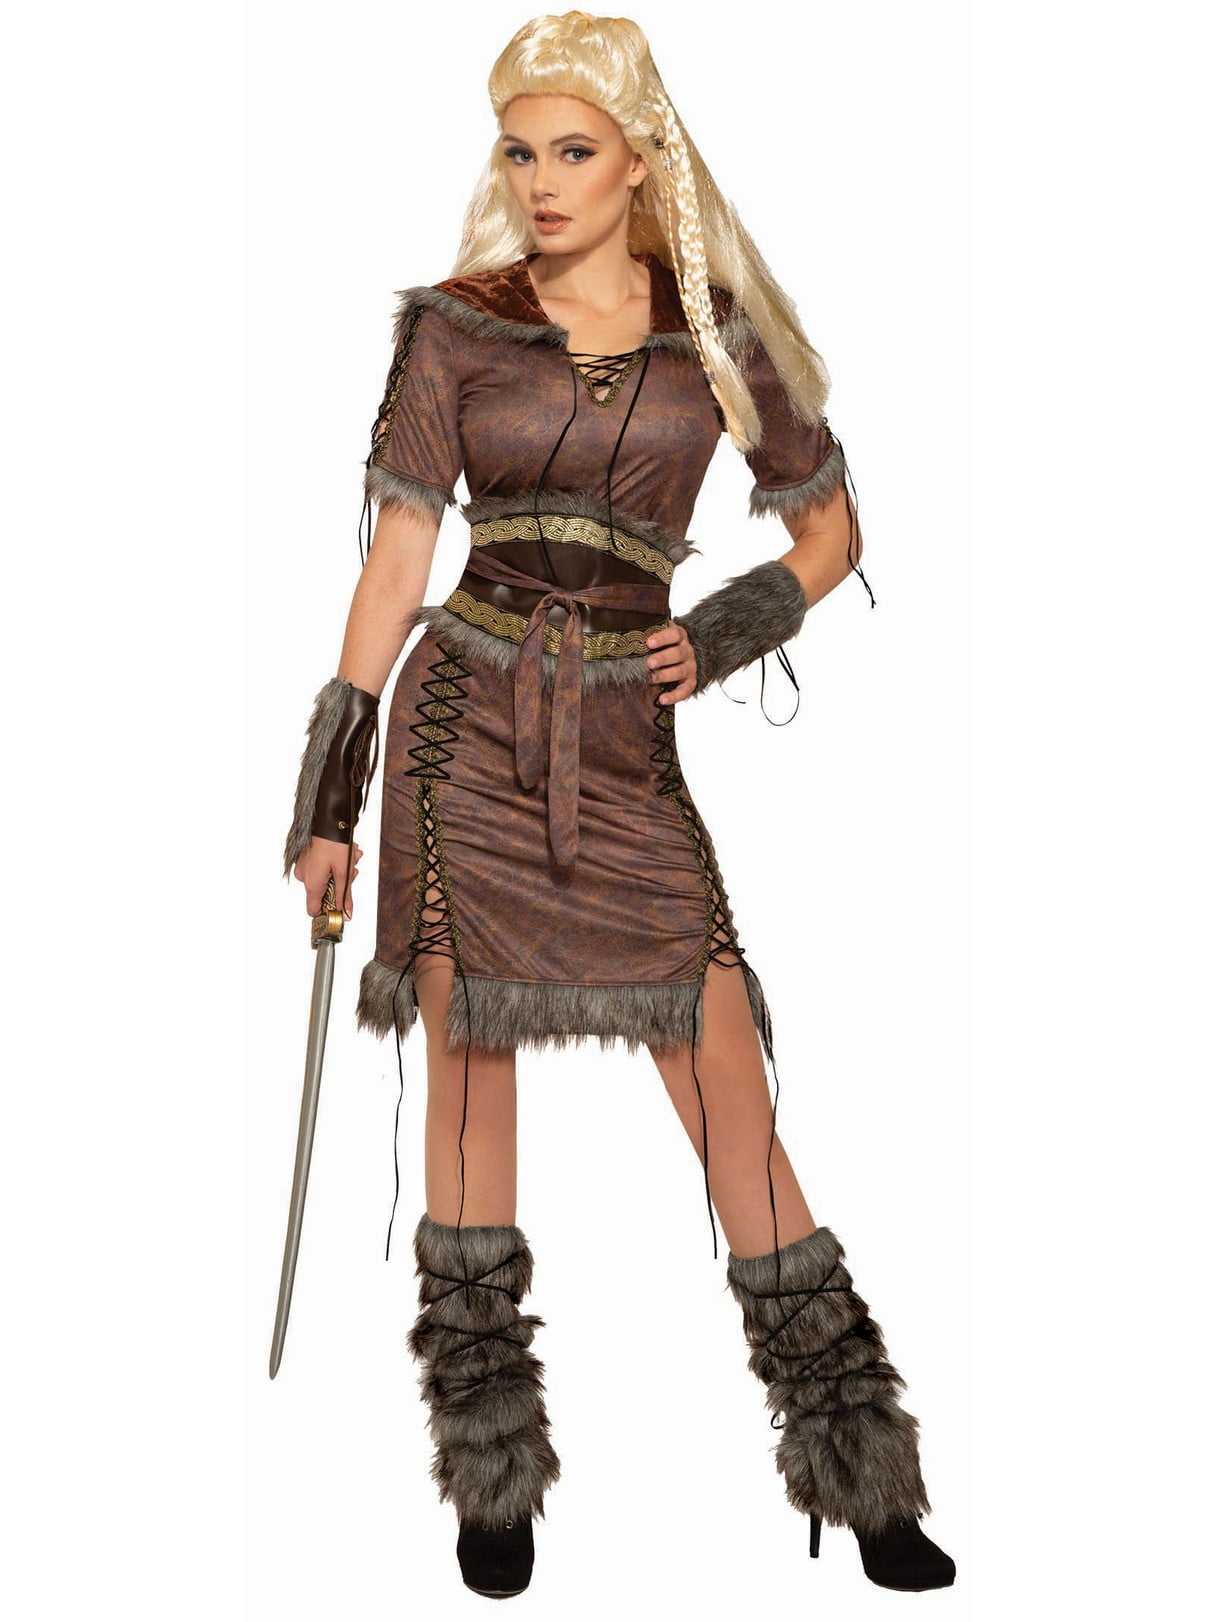 Shieldmaiden: The Female Vikings Warrior (Skjaldmö) - Medieval